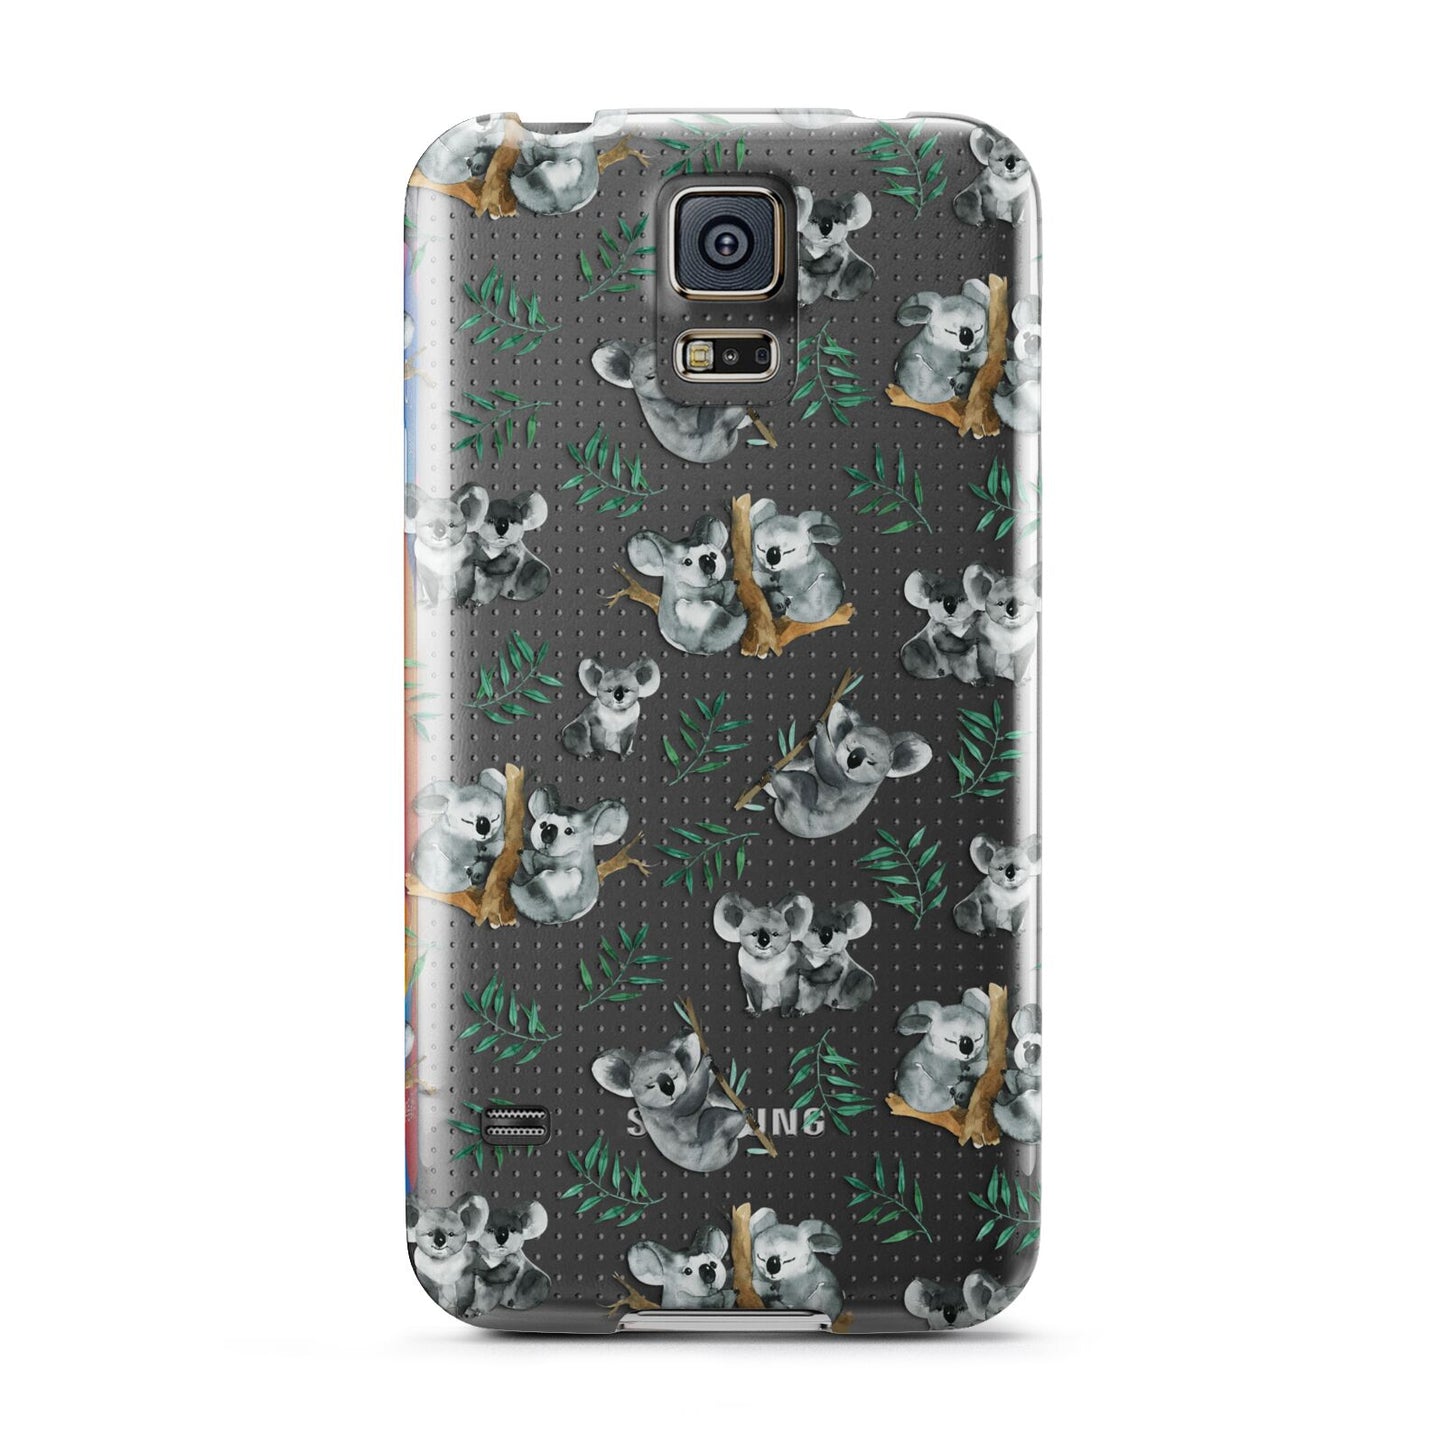 Koala Bear Samsung Galaxy S5 Case